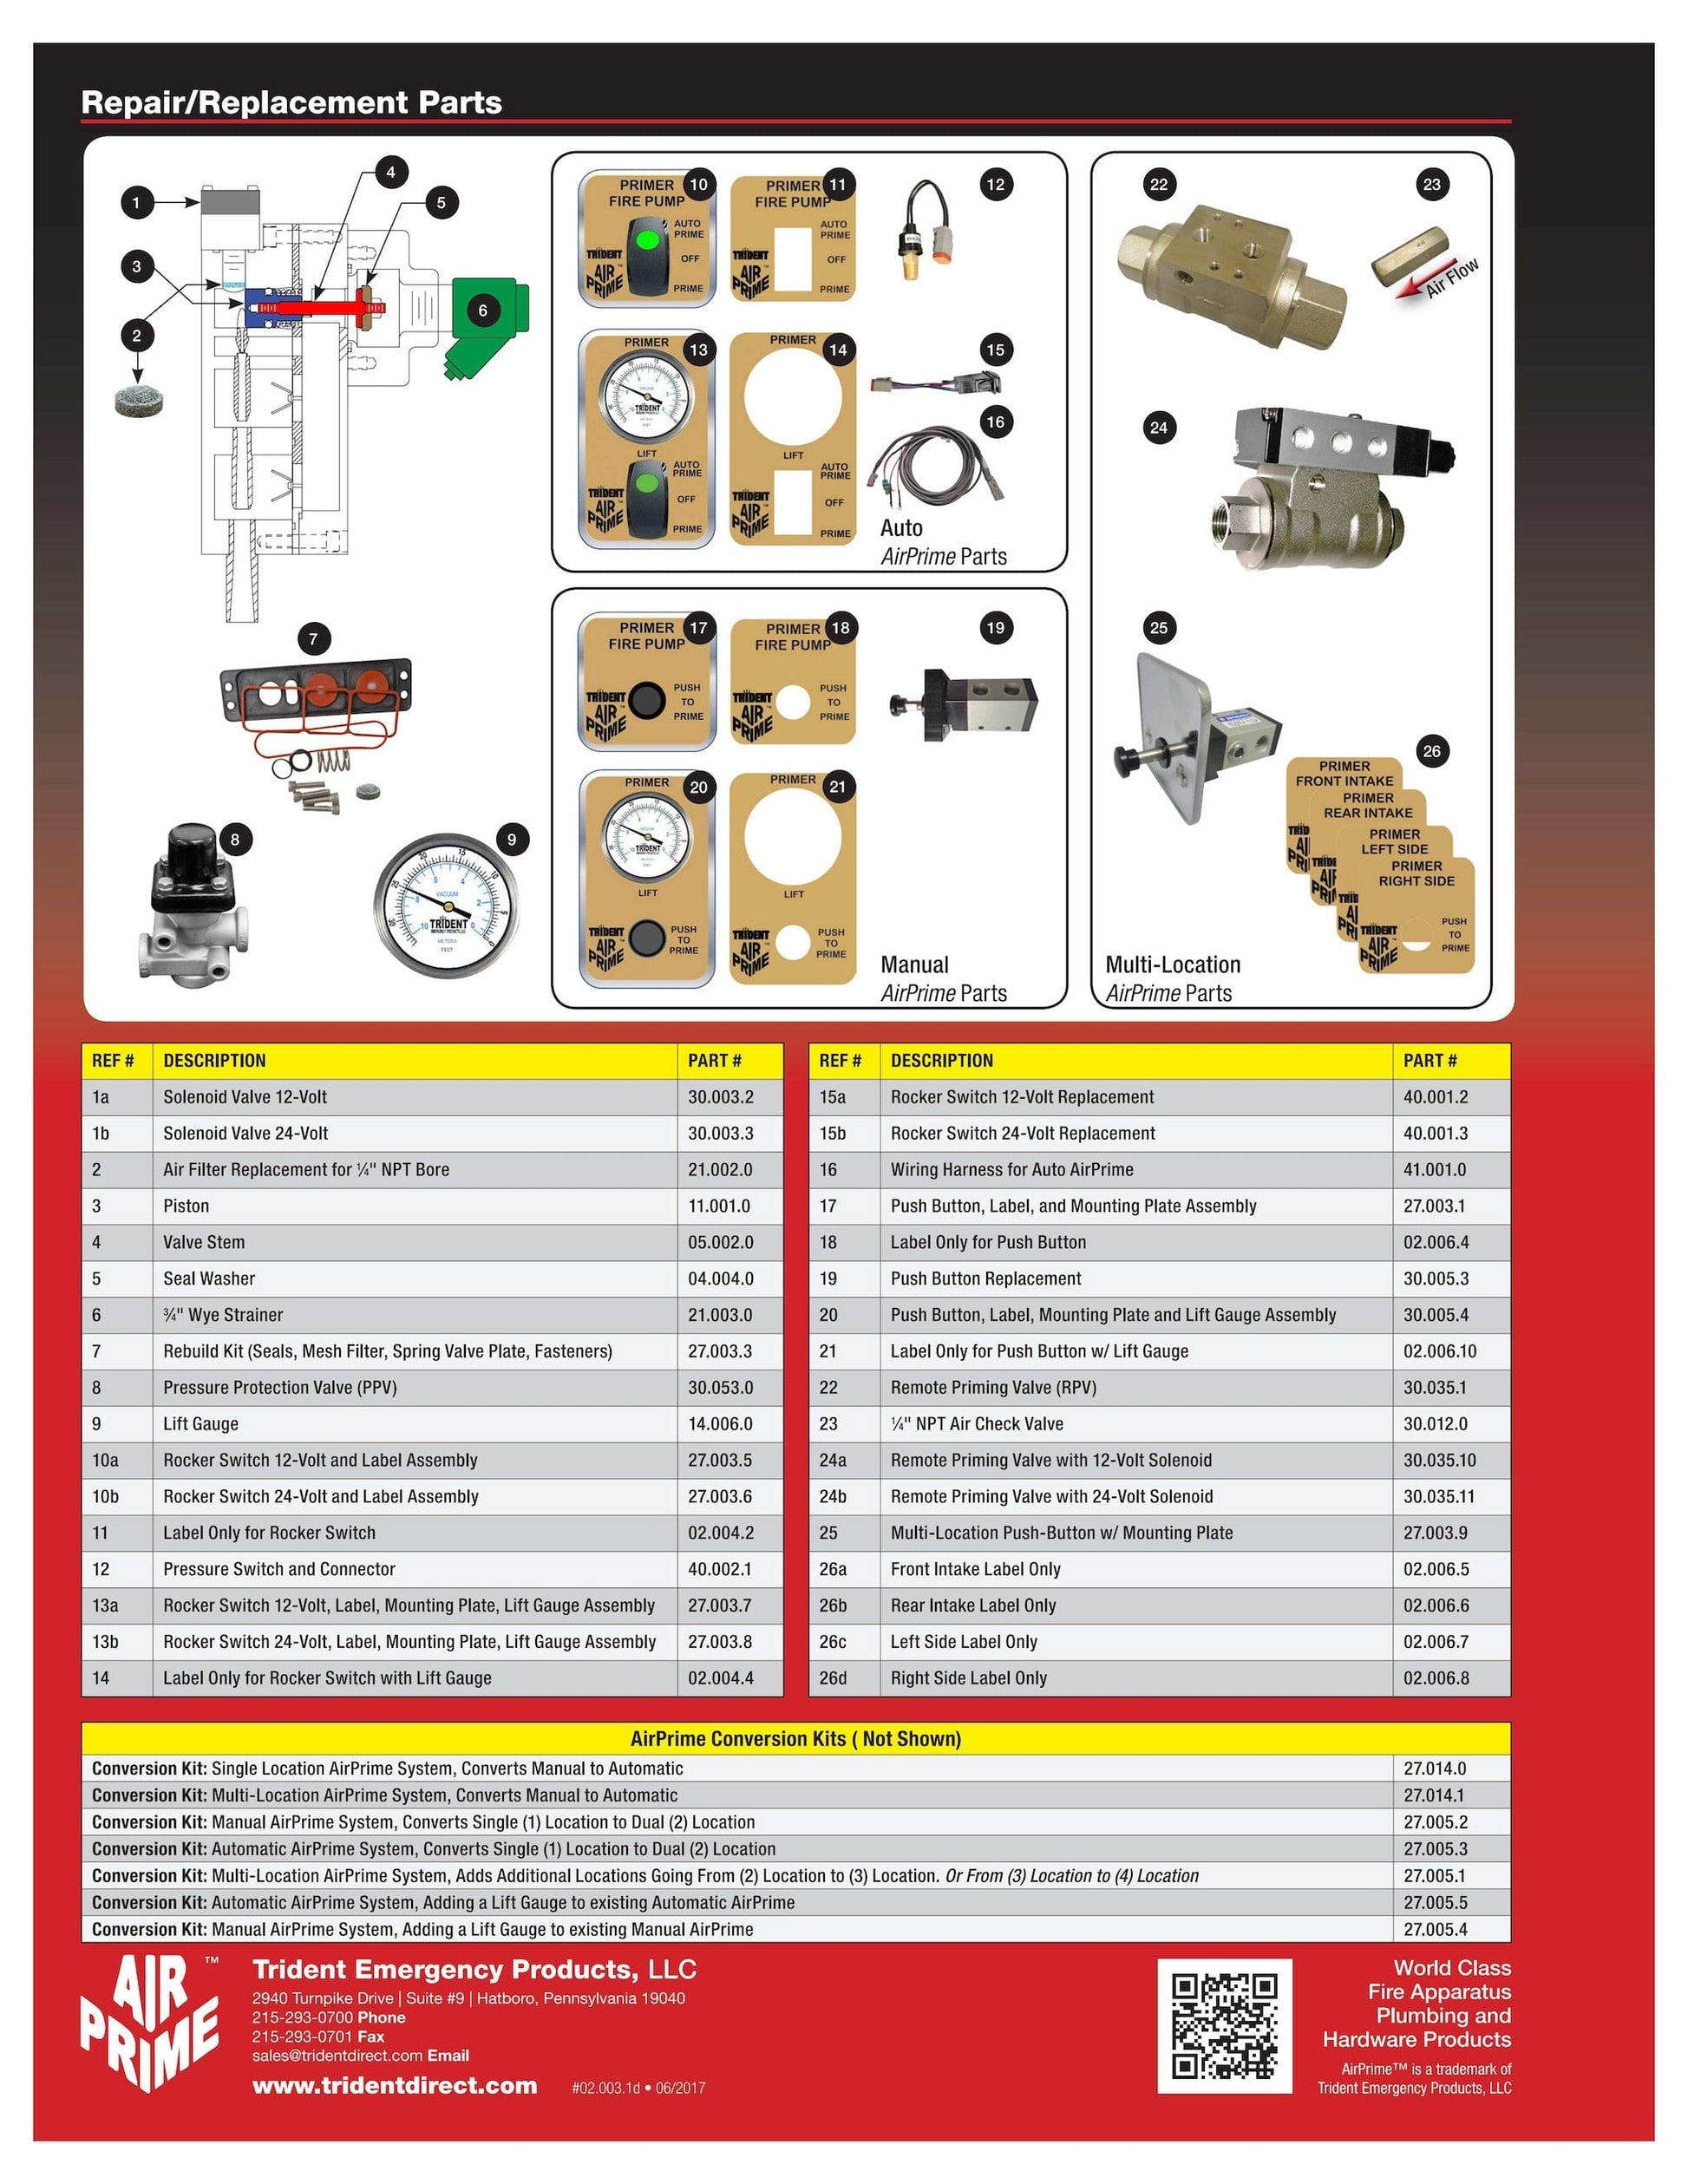 Trident  Air Primer Parts - Piston - 11.001.0